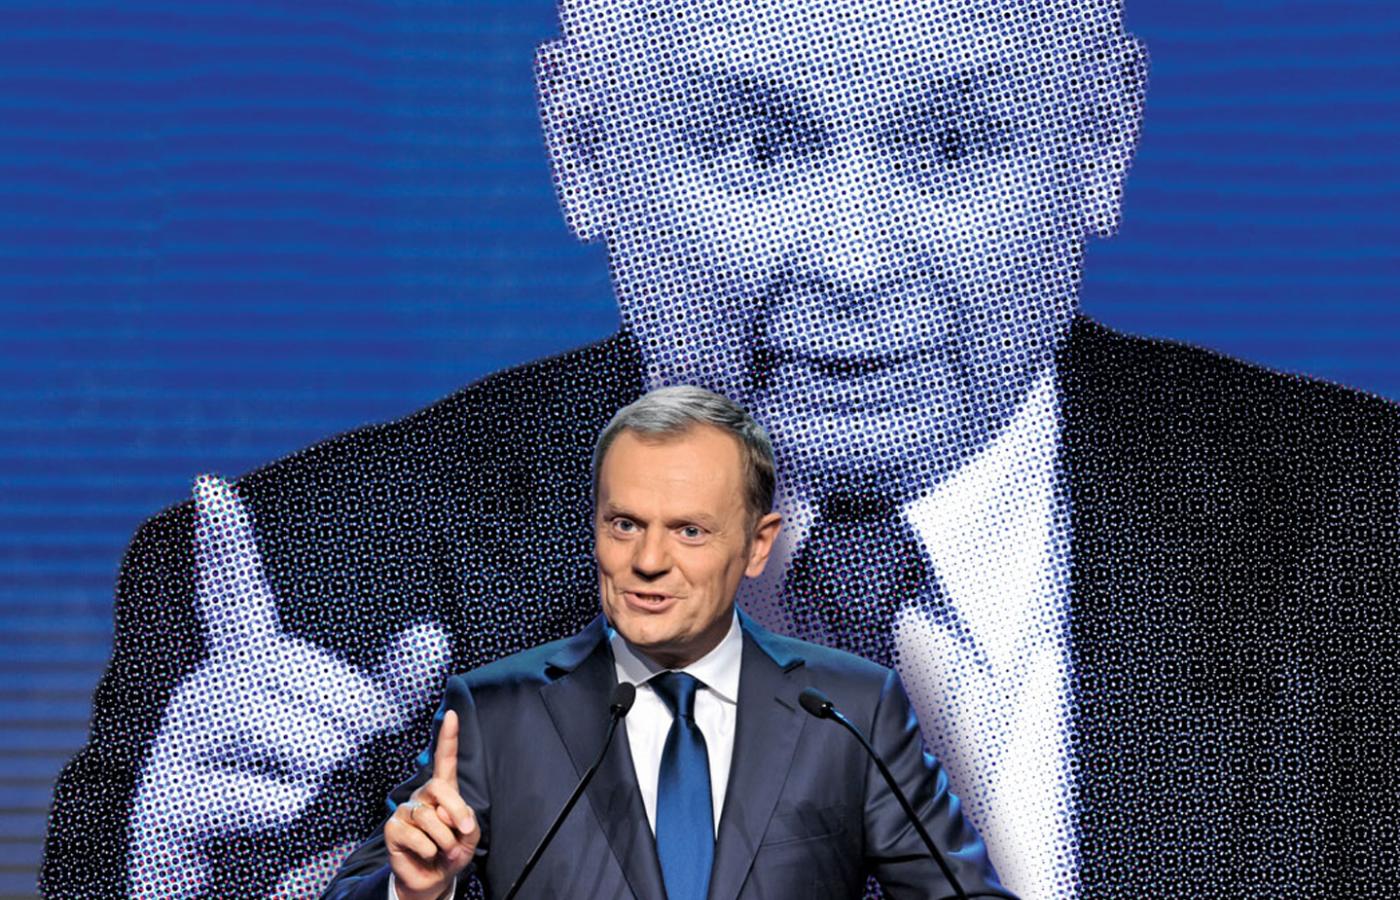 Jarosław Kaczyński i Donald Tusk są ze sobą spleceni w śmiertelnym uścisku, skazani na siebie i na walkę ze sobą.